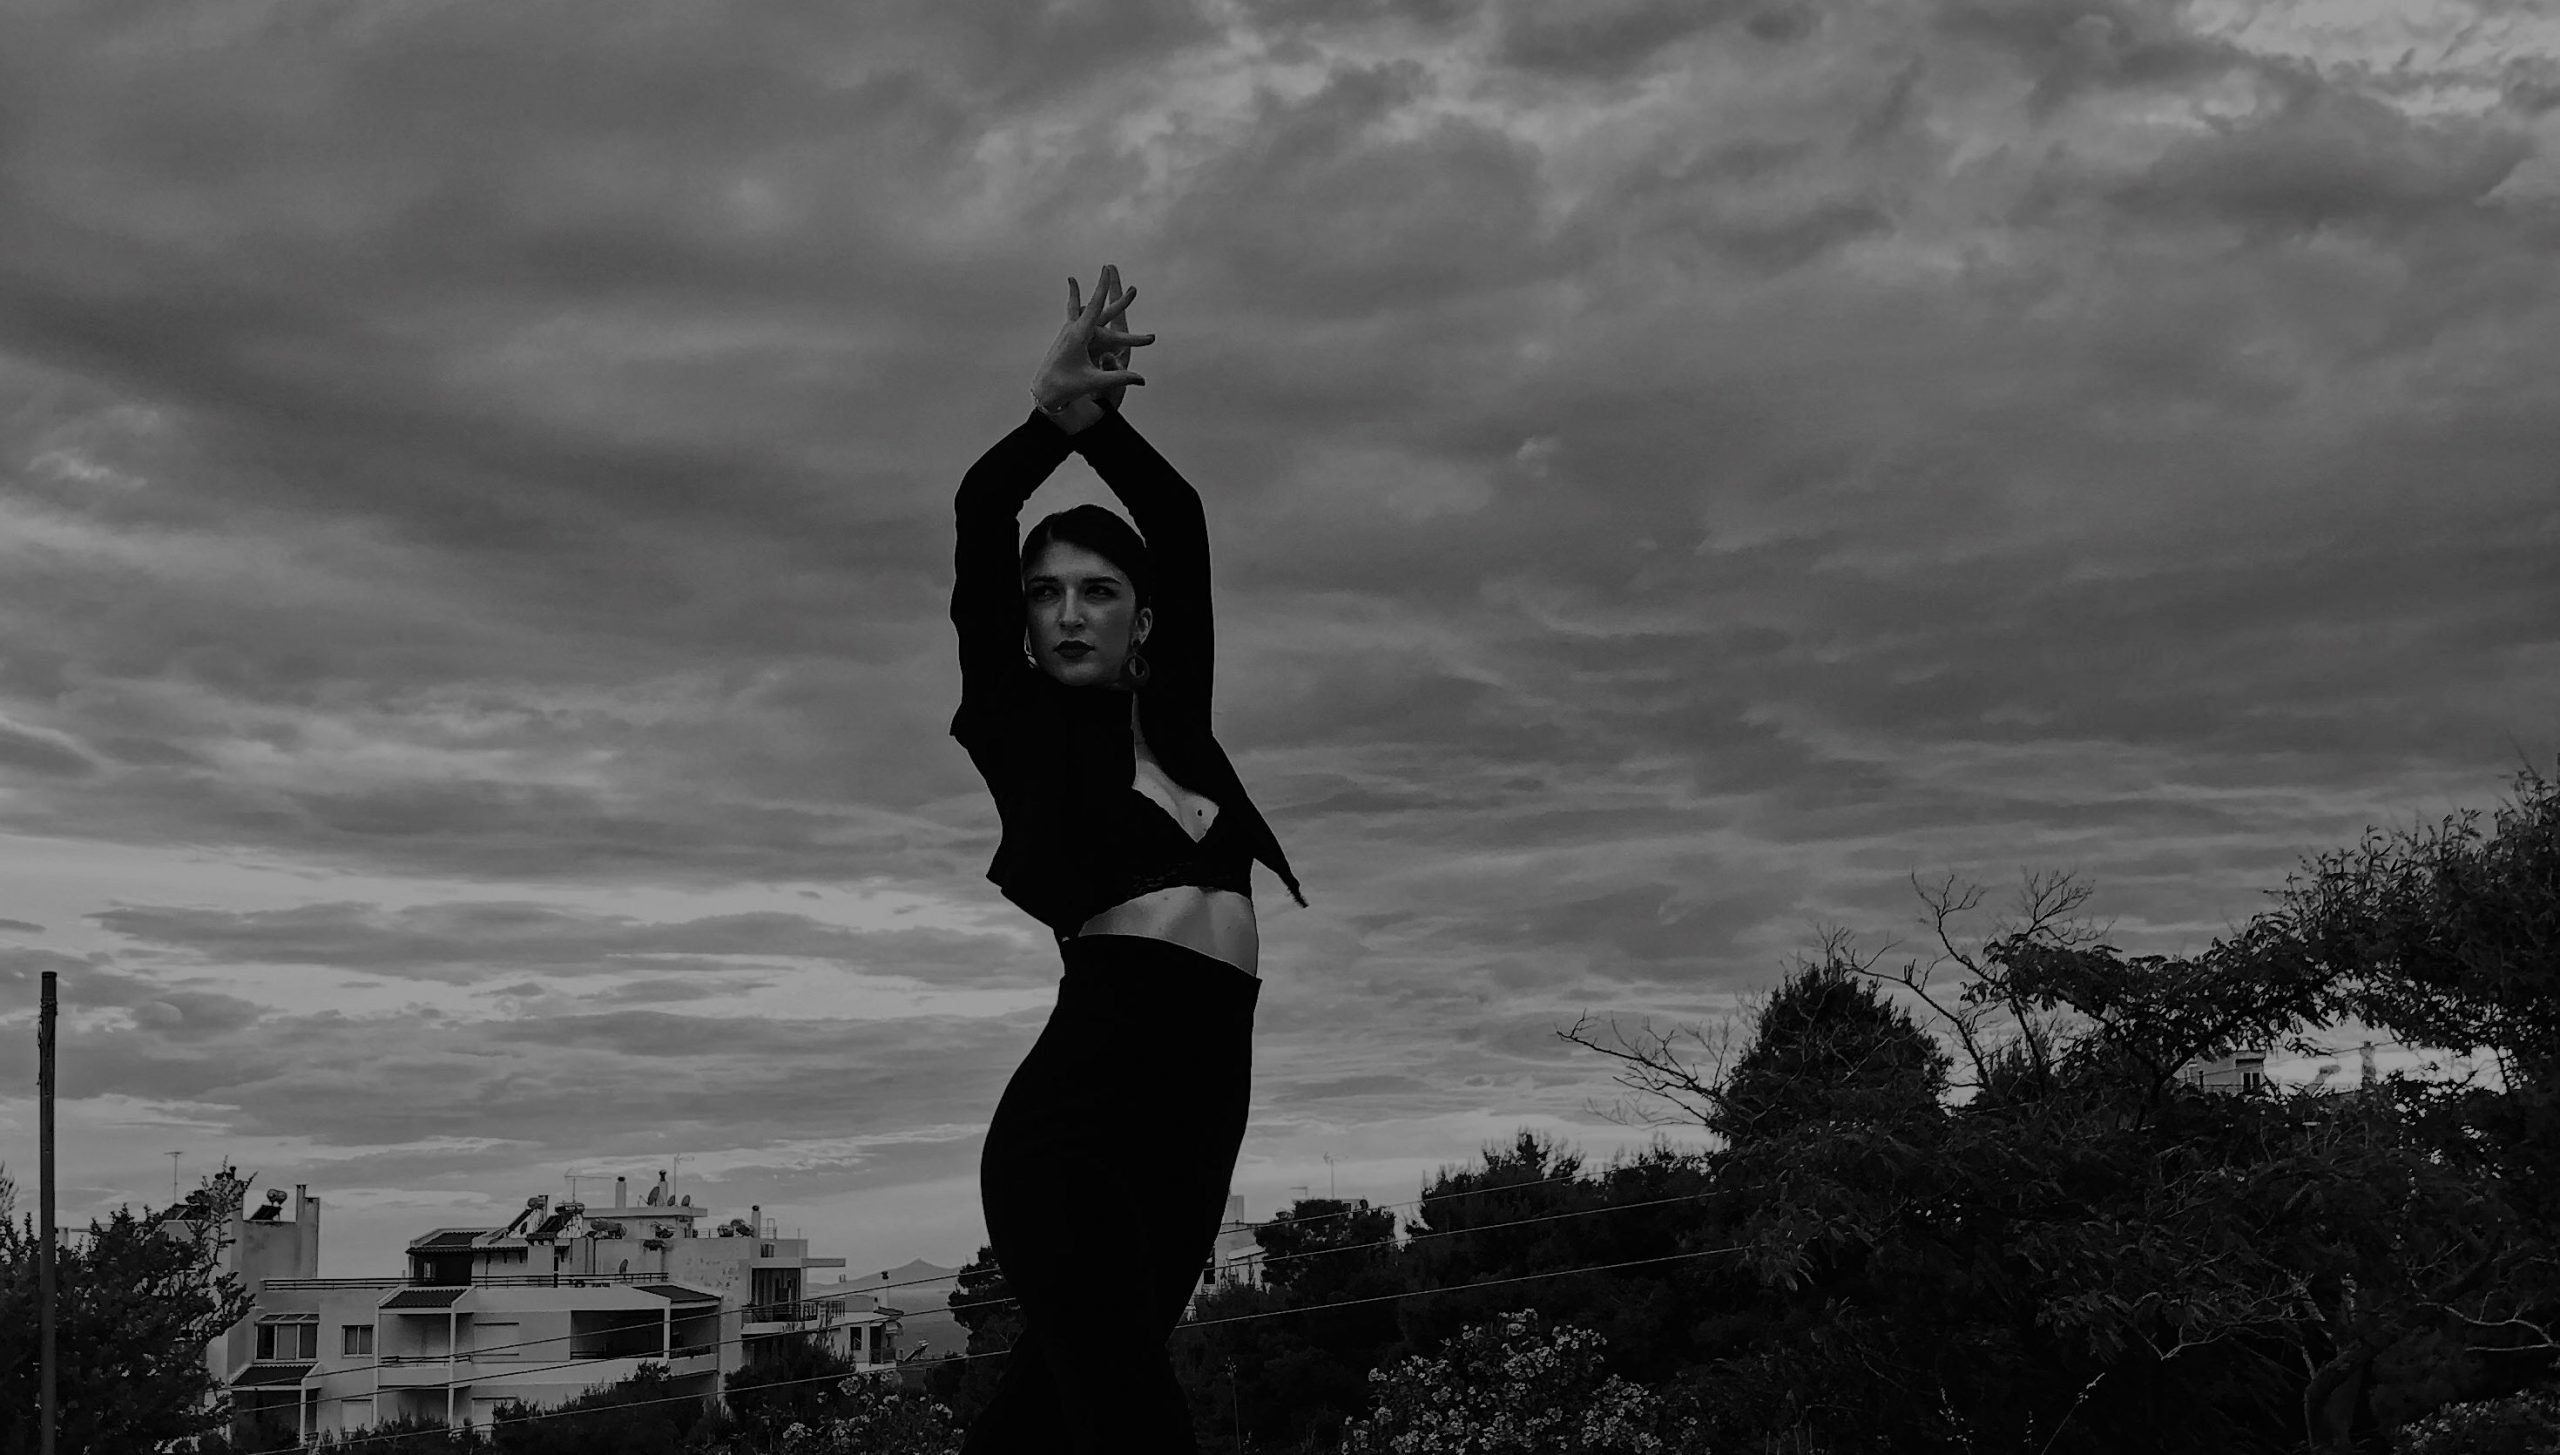 Φωτογραφία της Βάσια Κατσιγιάννη που κάνει μια πόζα flamenco με τα χέρια της προς τα πάνω. Φοράει μαύρα ρούχα και πίσω της φαίνεται ο συννεφιασμένος ουρανός.